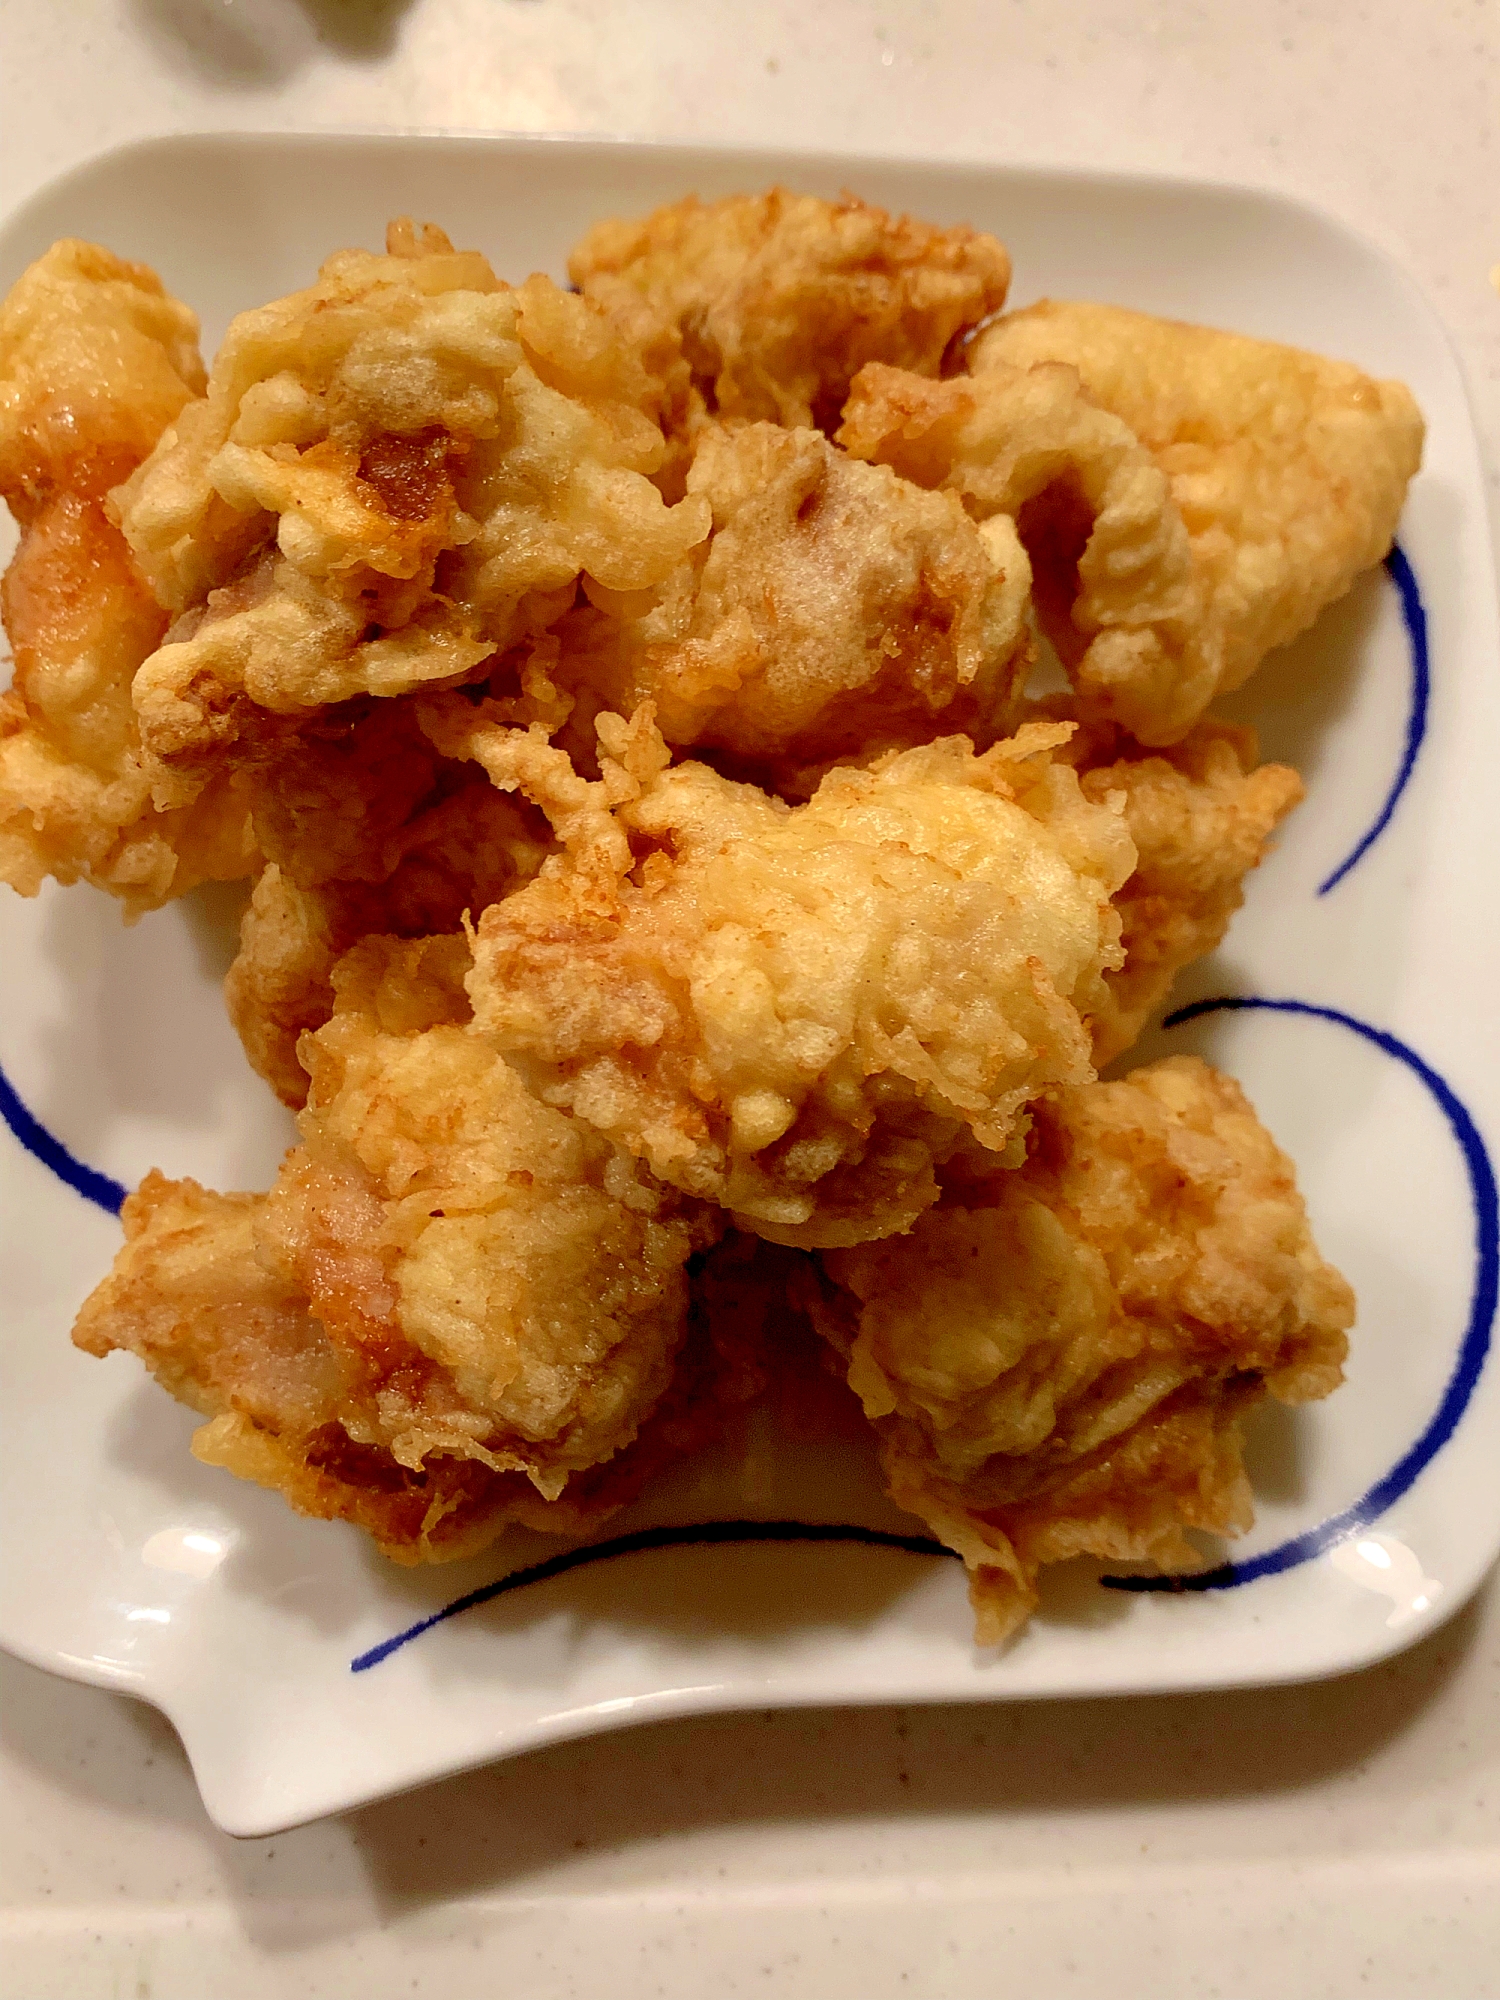 鶏モモ肉の天ぷら